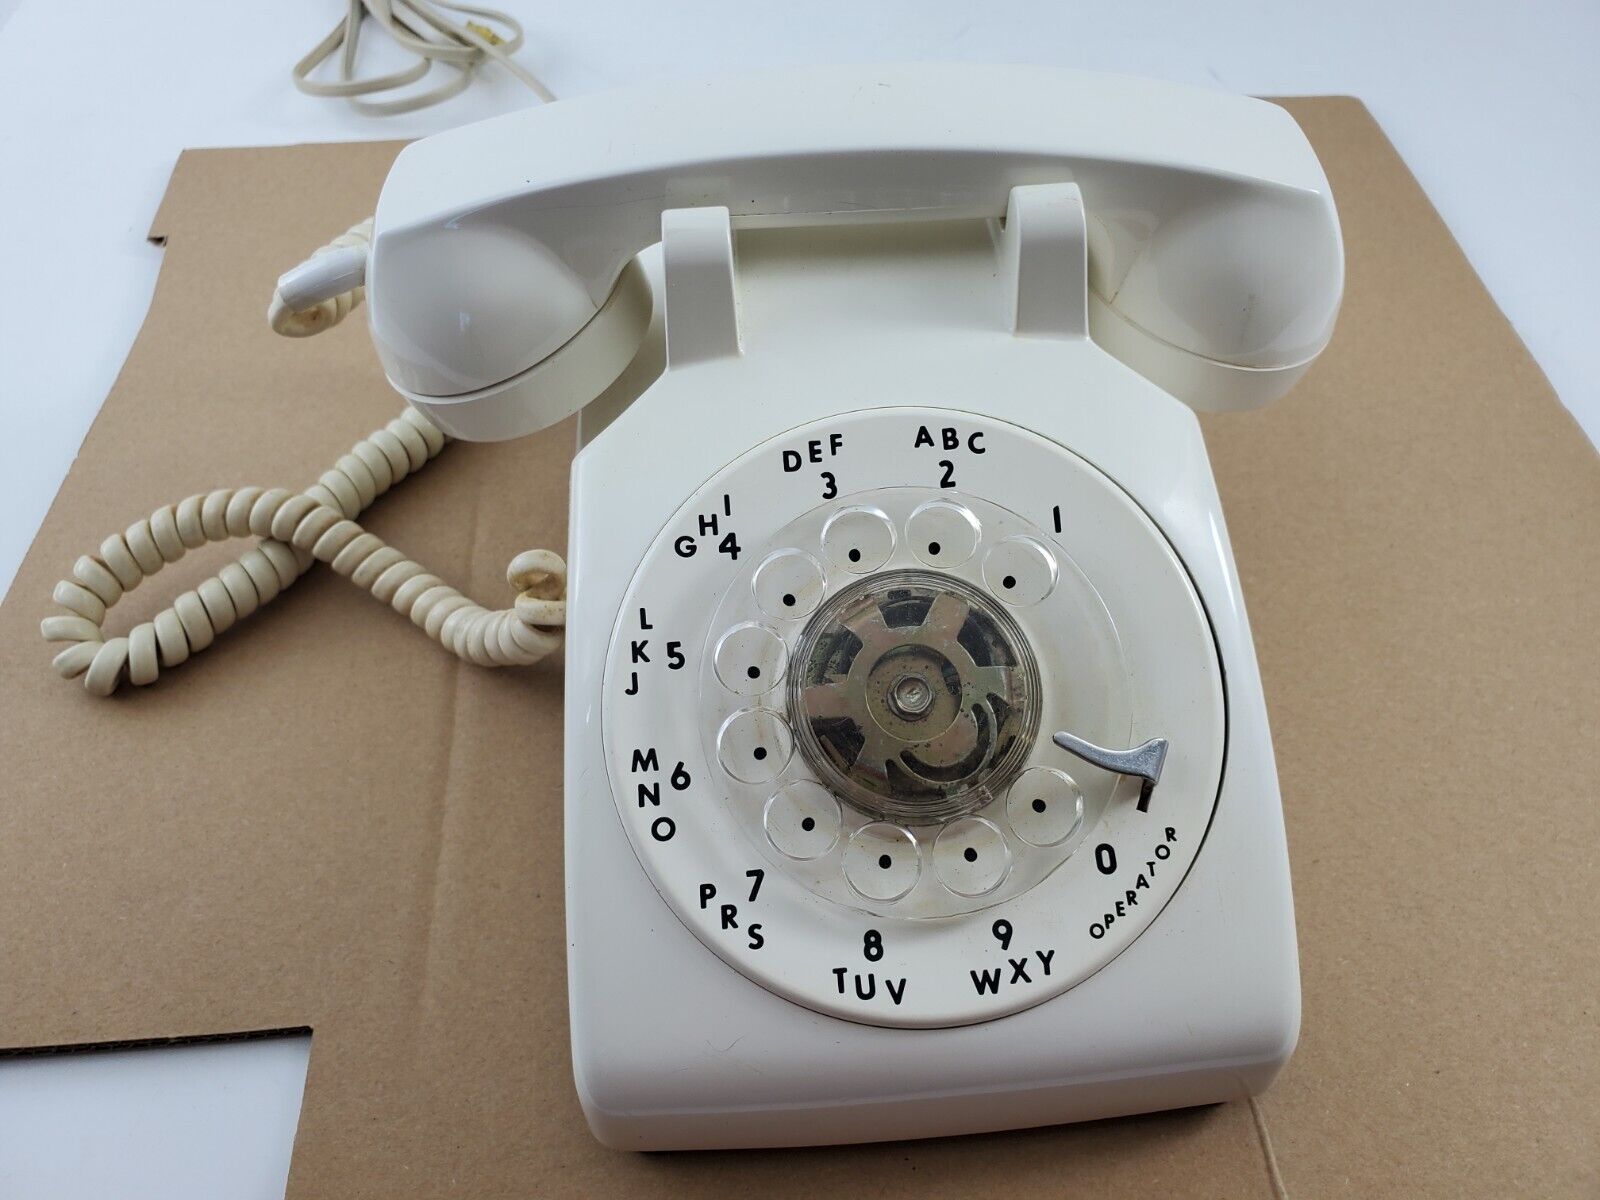 Vintage 1970's ITT White Rotary Dial Phone Tested Office Desk Telephone